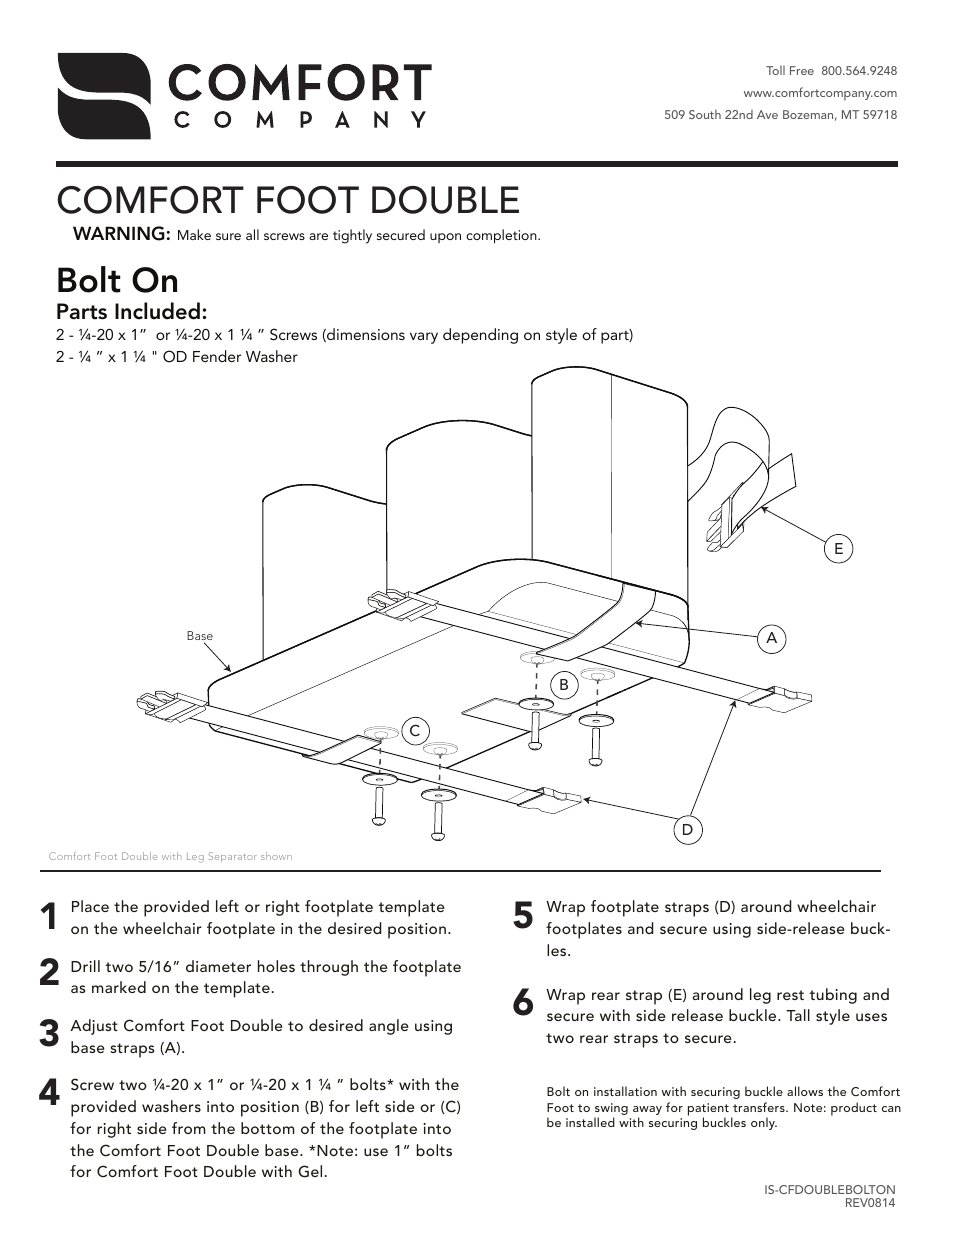 Comfort Foot Double